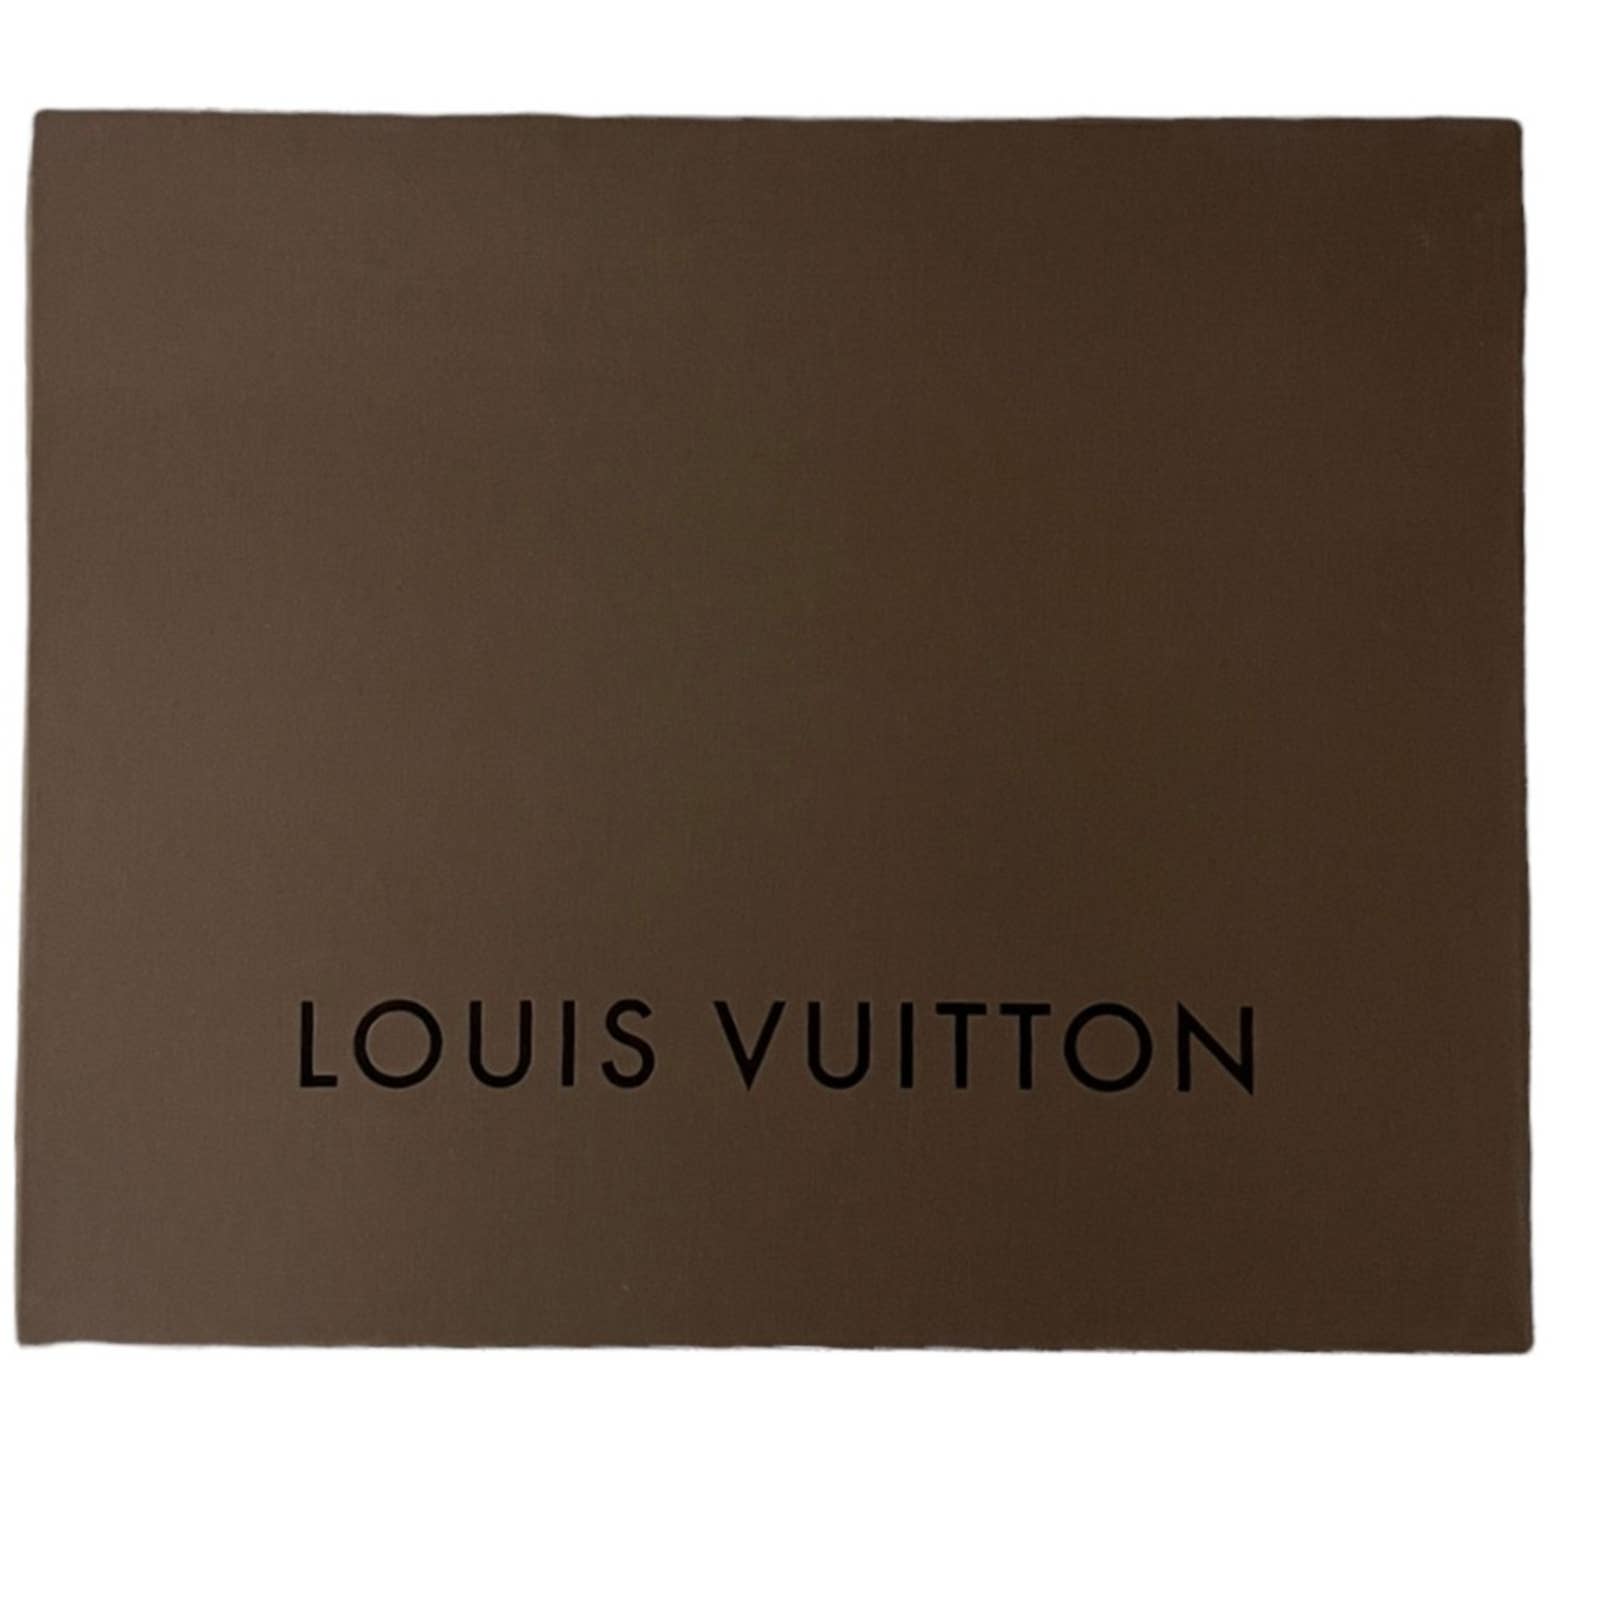 Louis Vuitton Galliera PM Monogram Canvas Handbag Shoulder Bag Damier Azur - Premium  from Louis Vuitton - Just $1499.0! Shop now at Finds For You